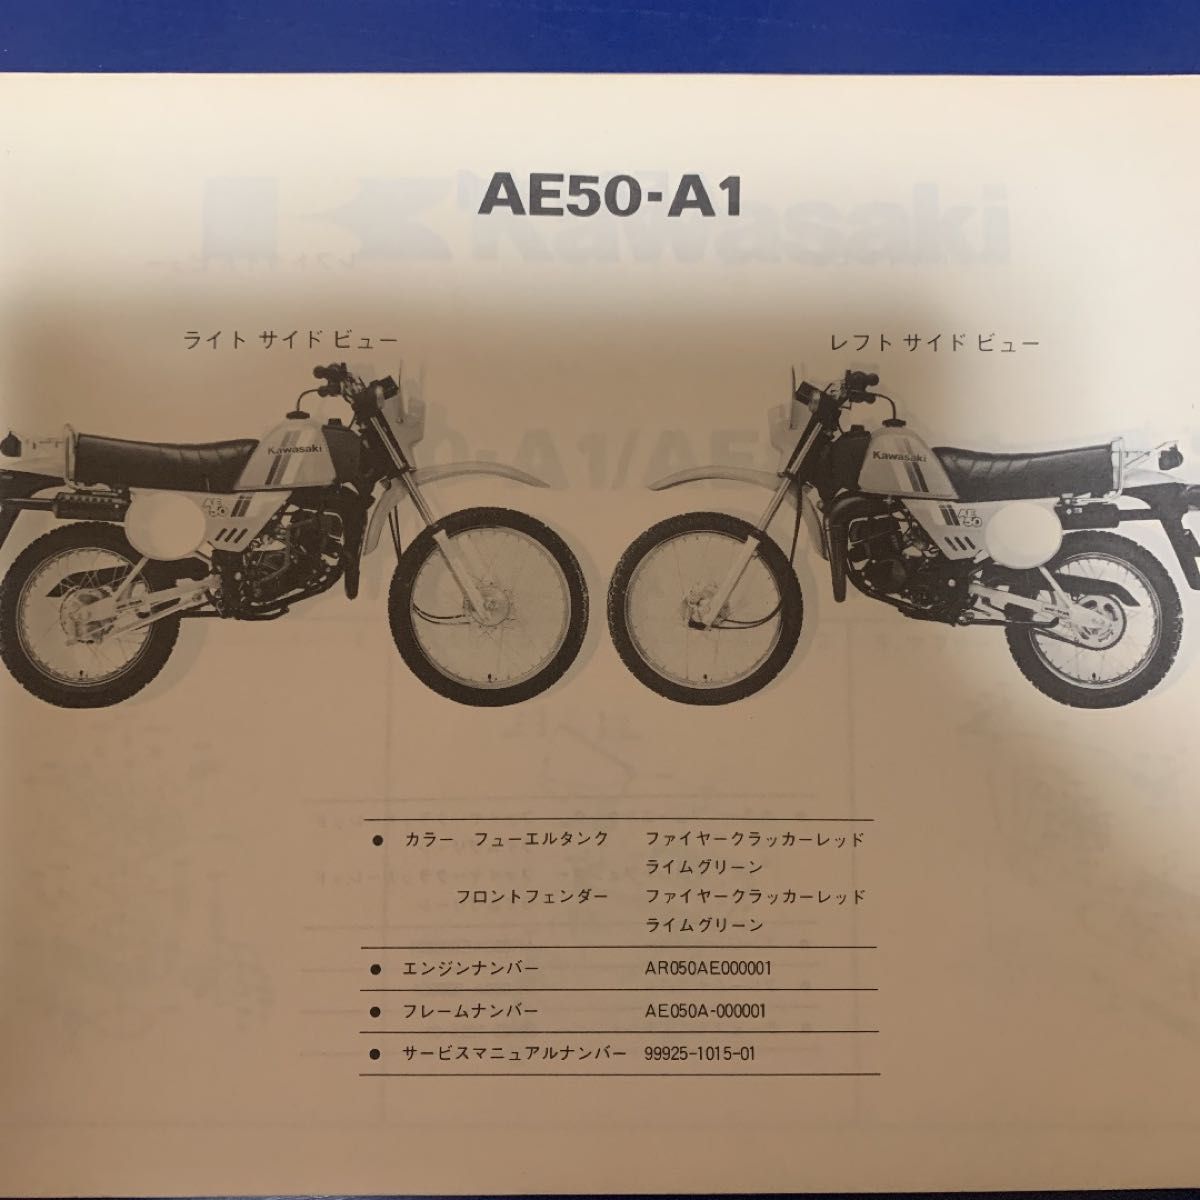 Kawasaki AE50-A/AE80-A パーツカタログ カワサキ